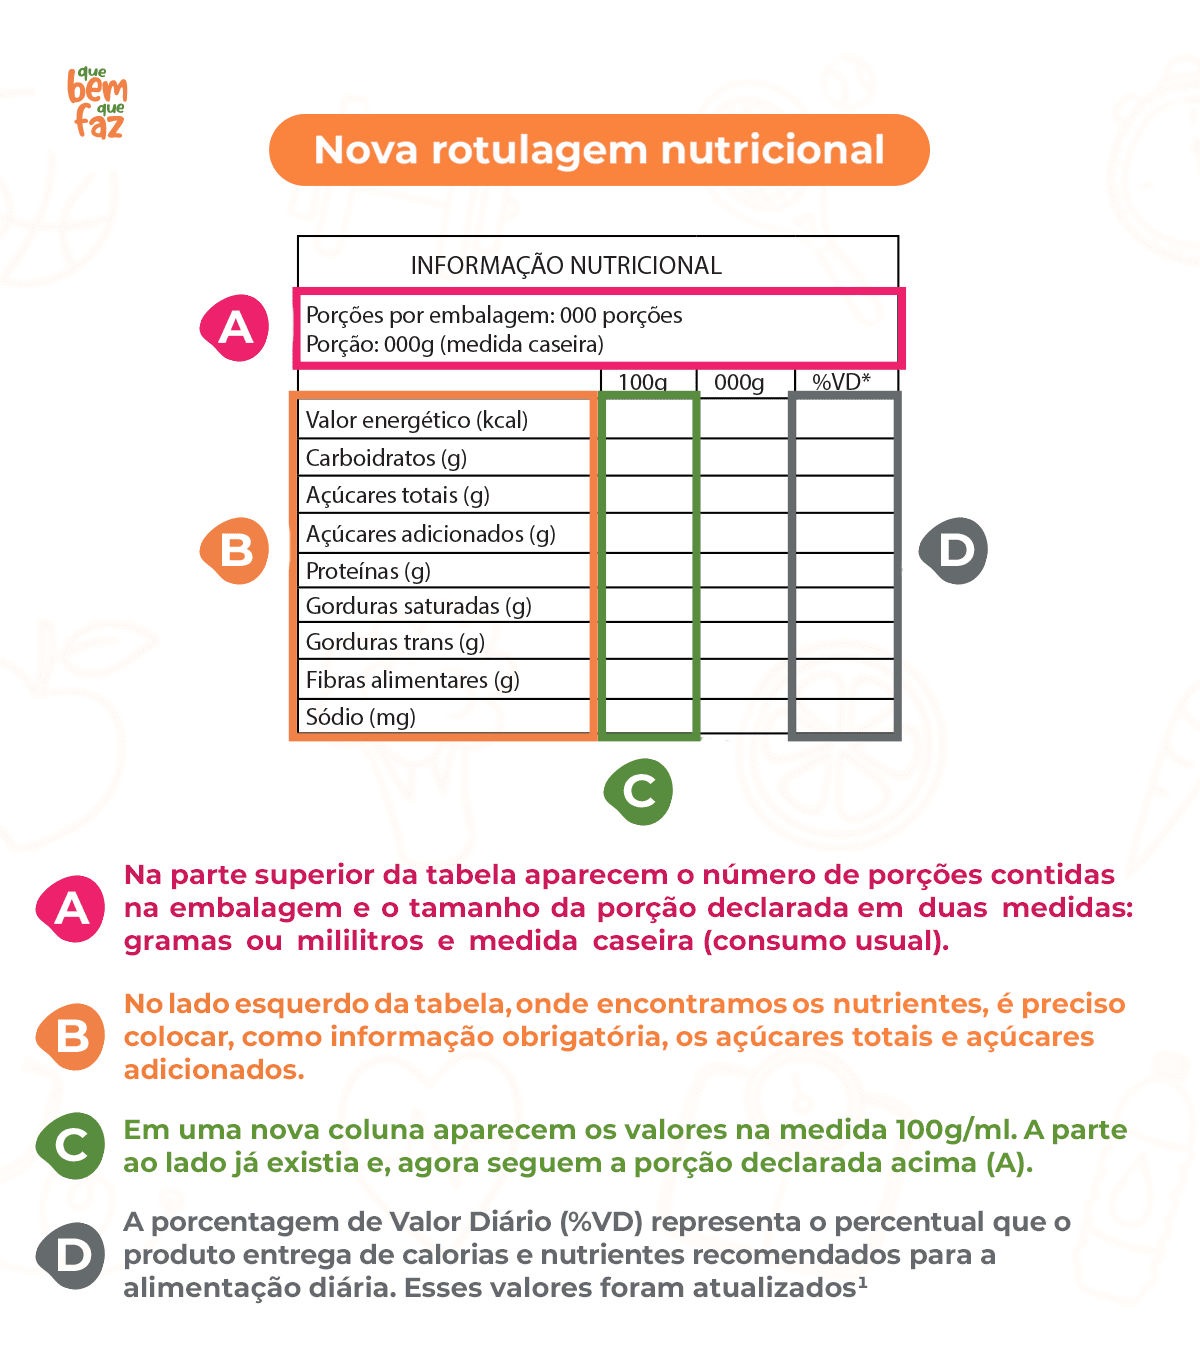 Infográfico com informações sobre a nova rotulagem nutricional (FOP).